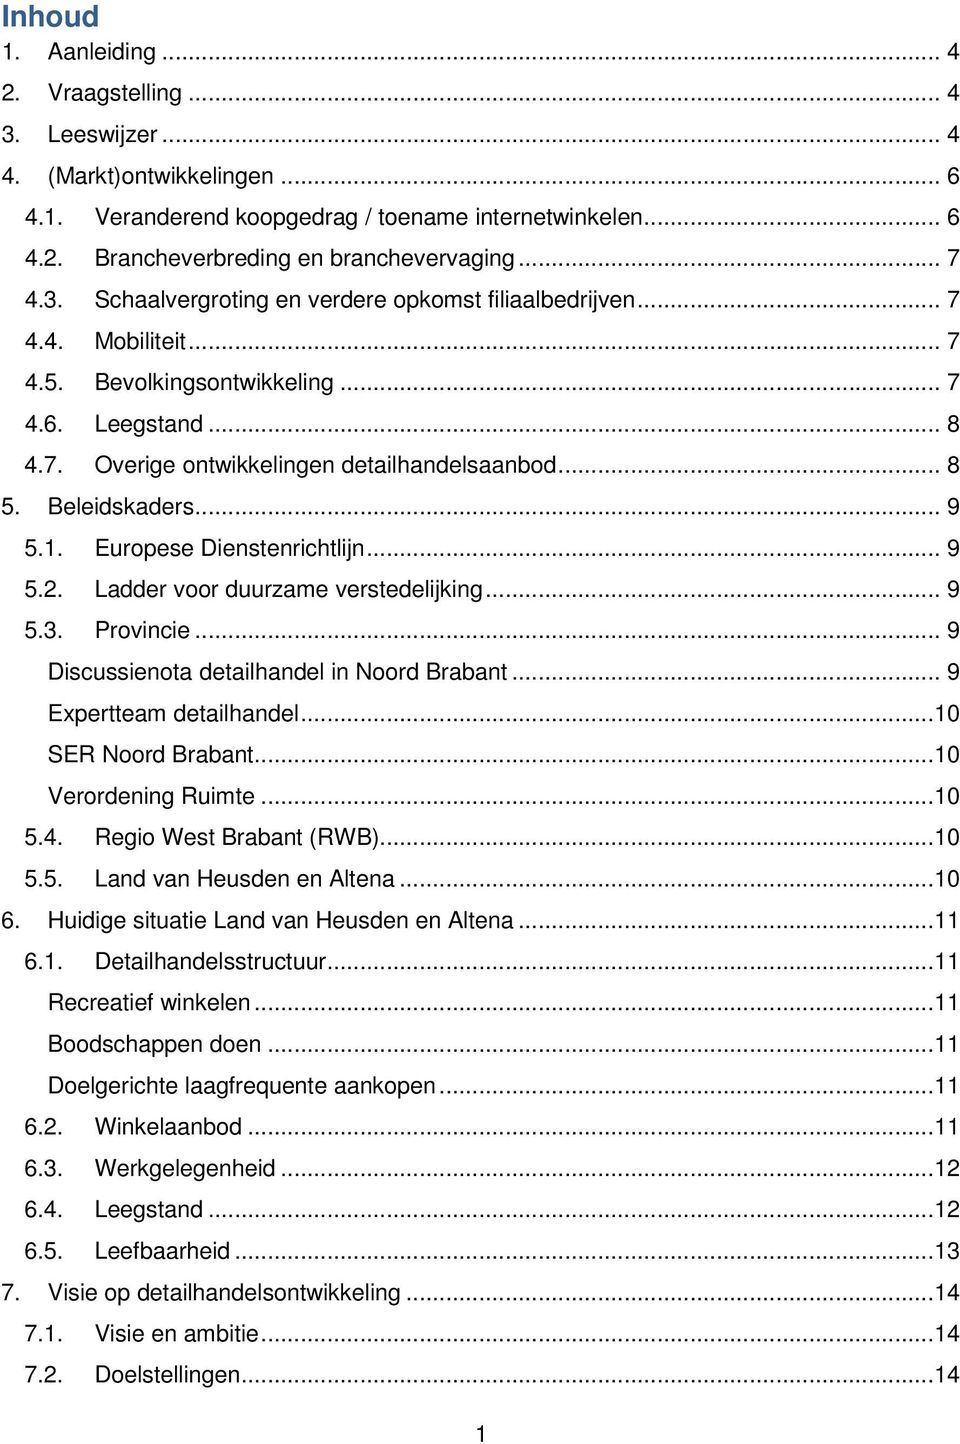 Beleidskaders... 9 5.1. Europese Dienstenrichtlijn... 9 5.2. Ladder voor duurzame verstedelijking... 9 5.3. Provincie... 9 Discussienota detailhandel in Noord Brabant... 9 Expertteam detailhandel.